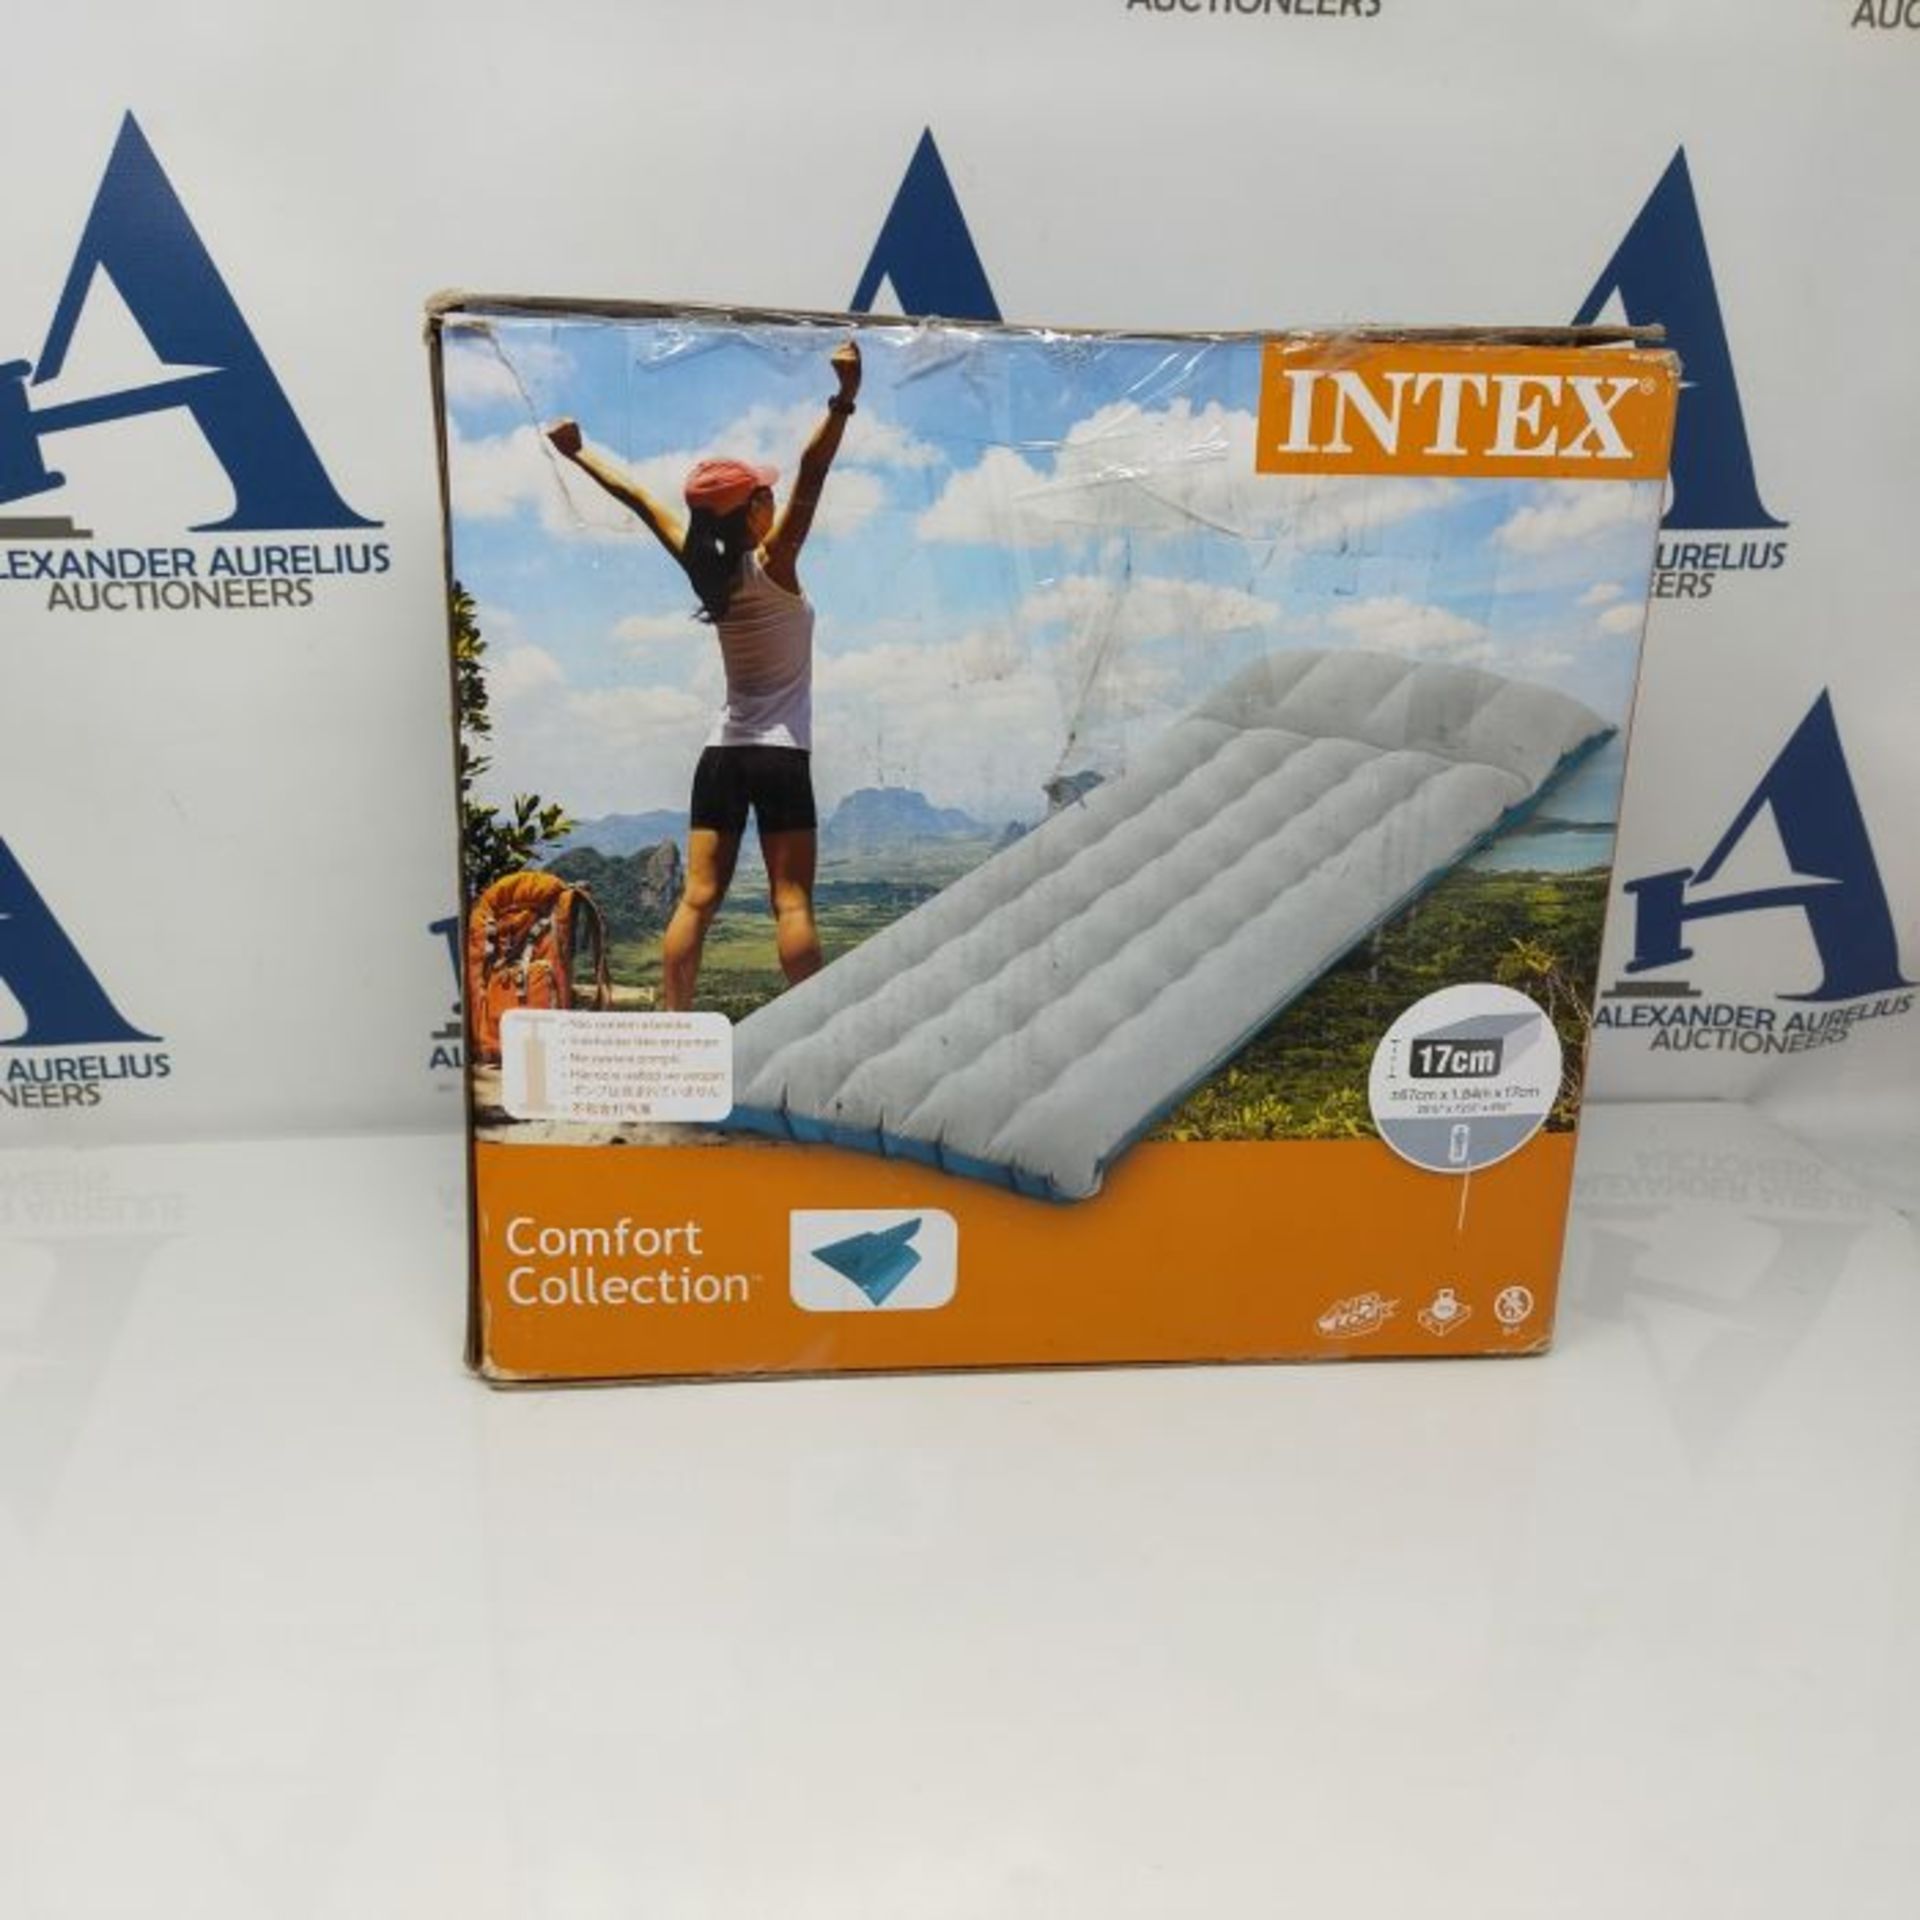 Intex 72.5" x 26.5" x 6.75" Fabric Camping Air Bed - Image 2 of 2